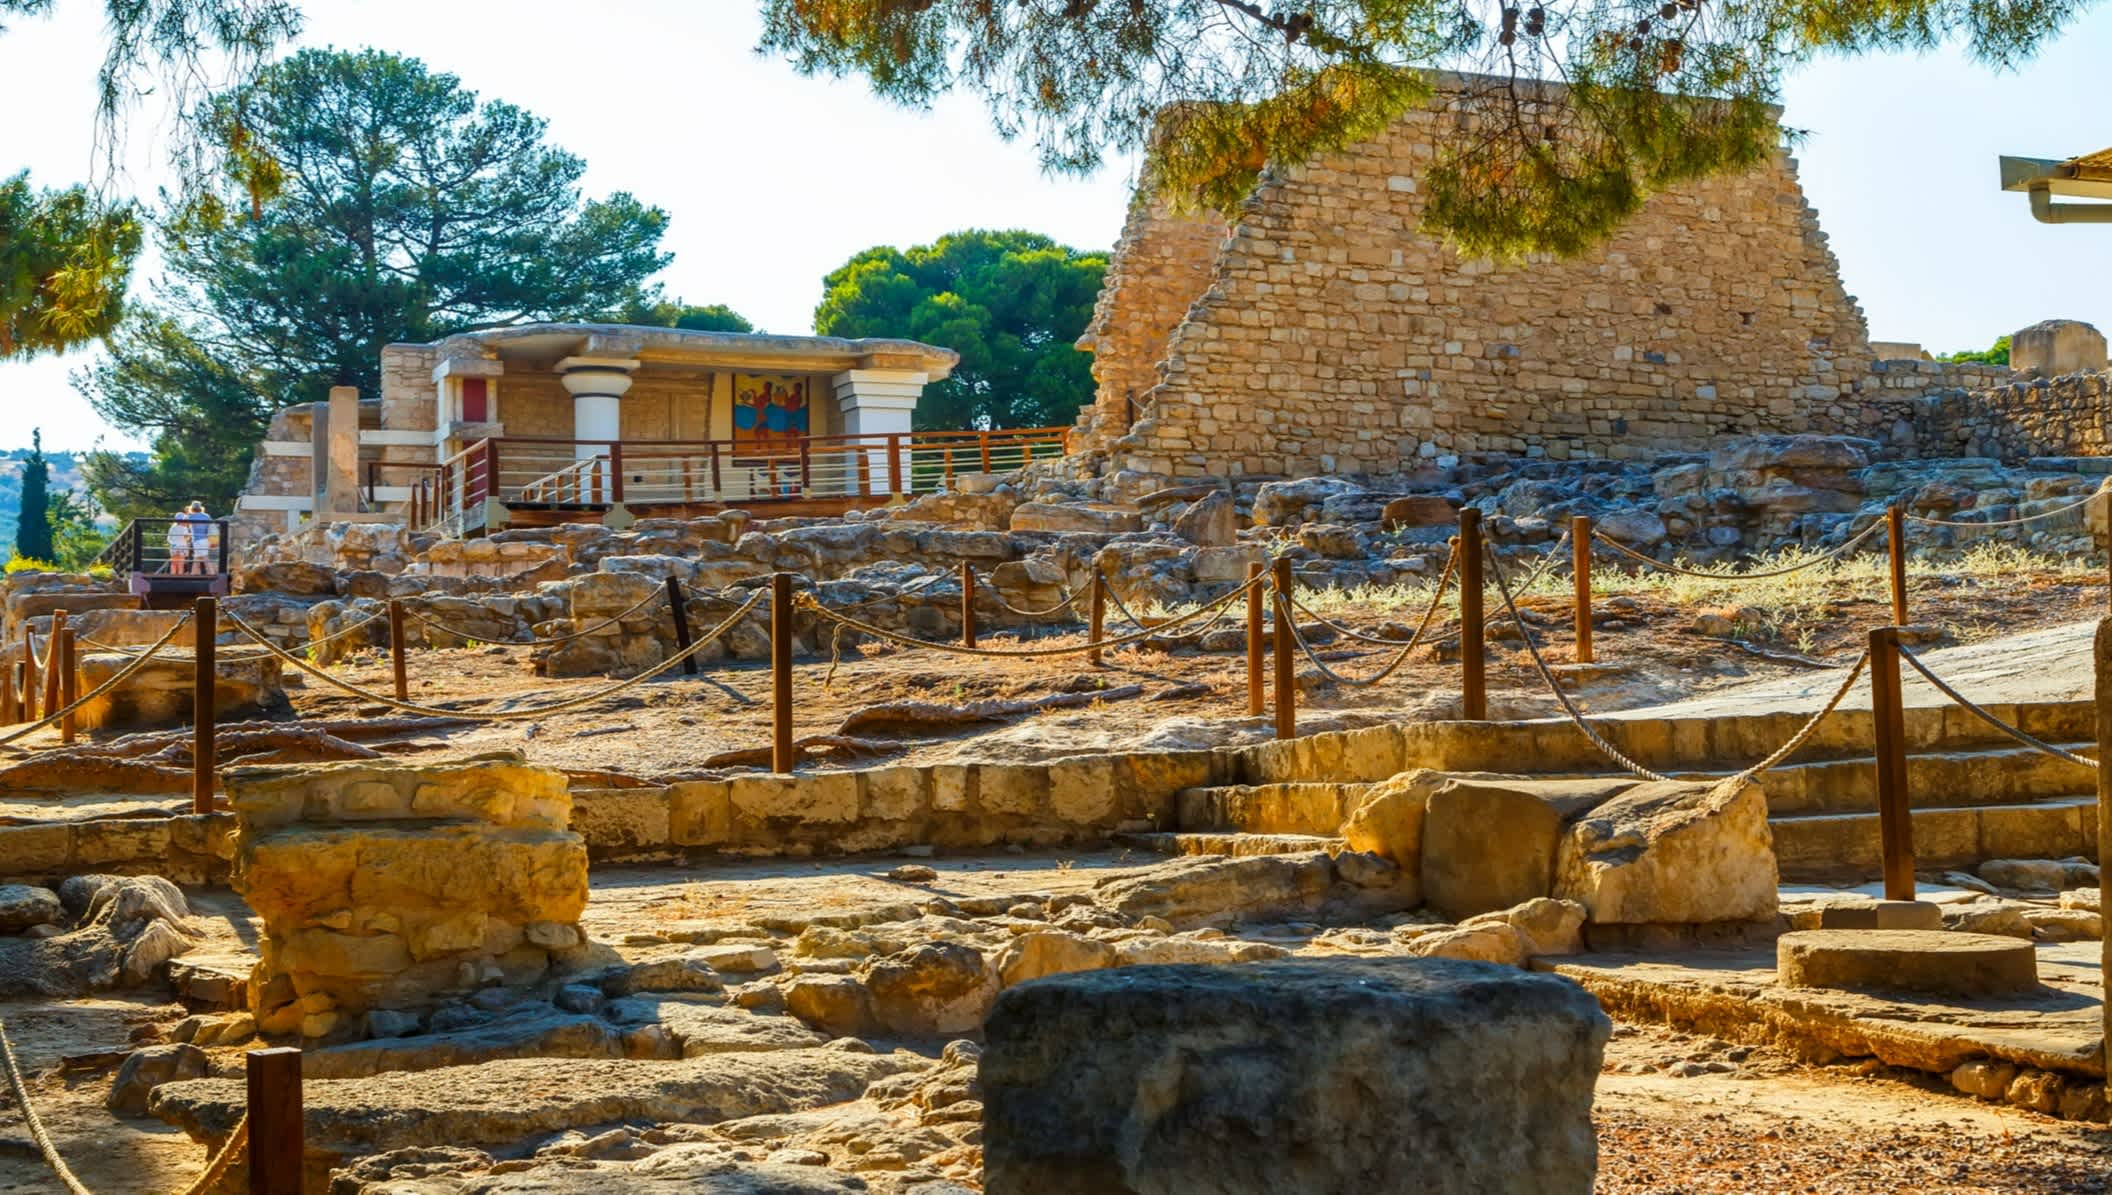 Antikes Museum auf der Insel Kreta in der Nähe Heraklion in Griechenland

